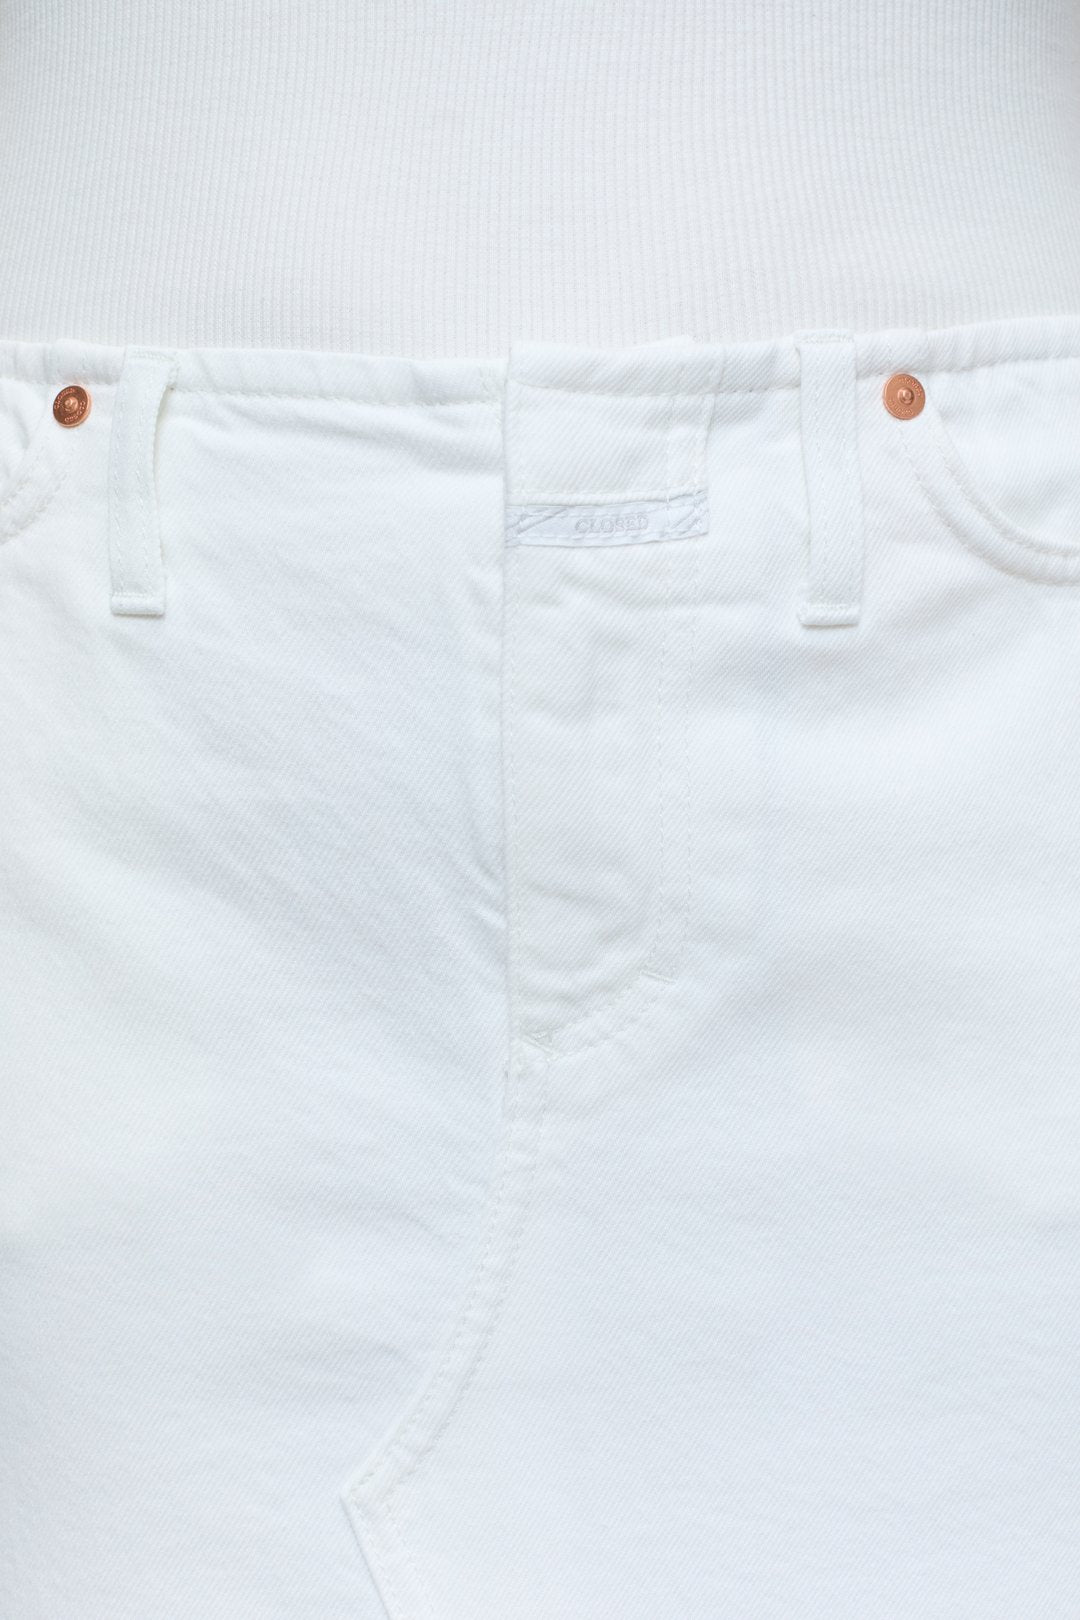 Long white 5 pocket skirt